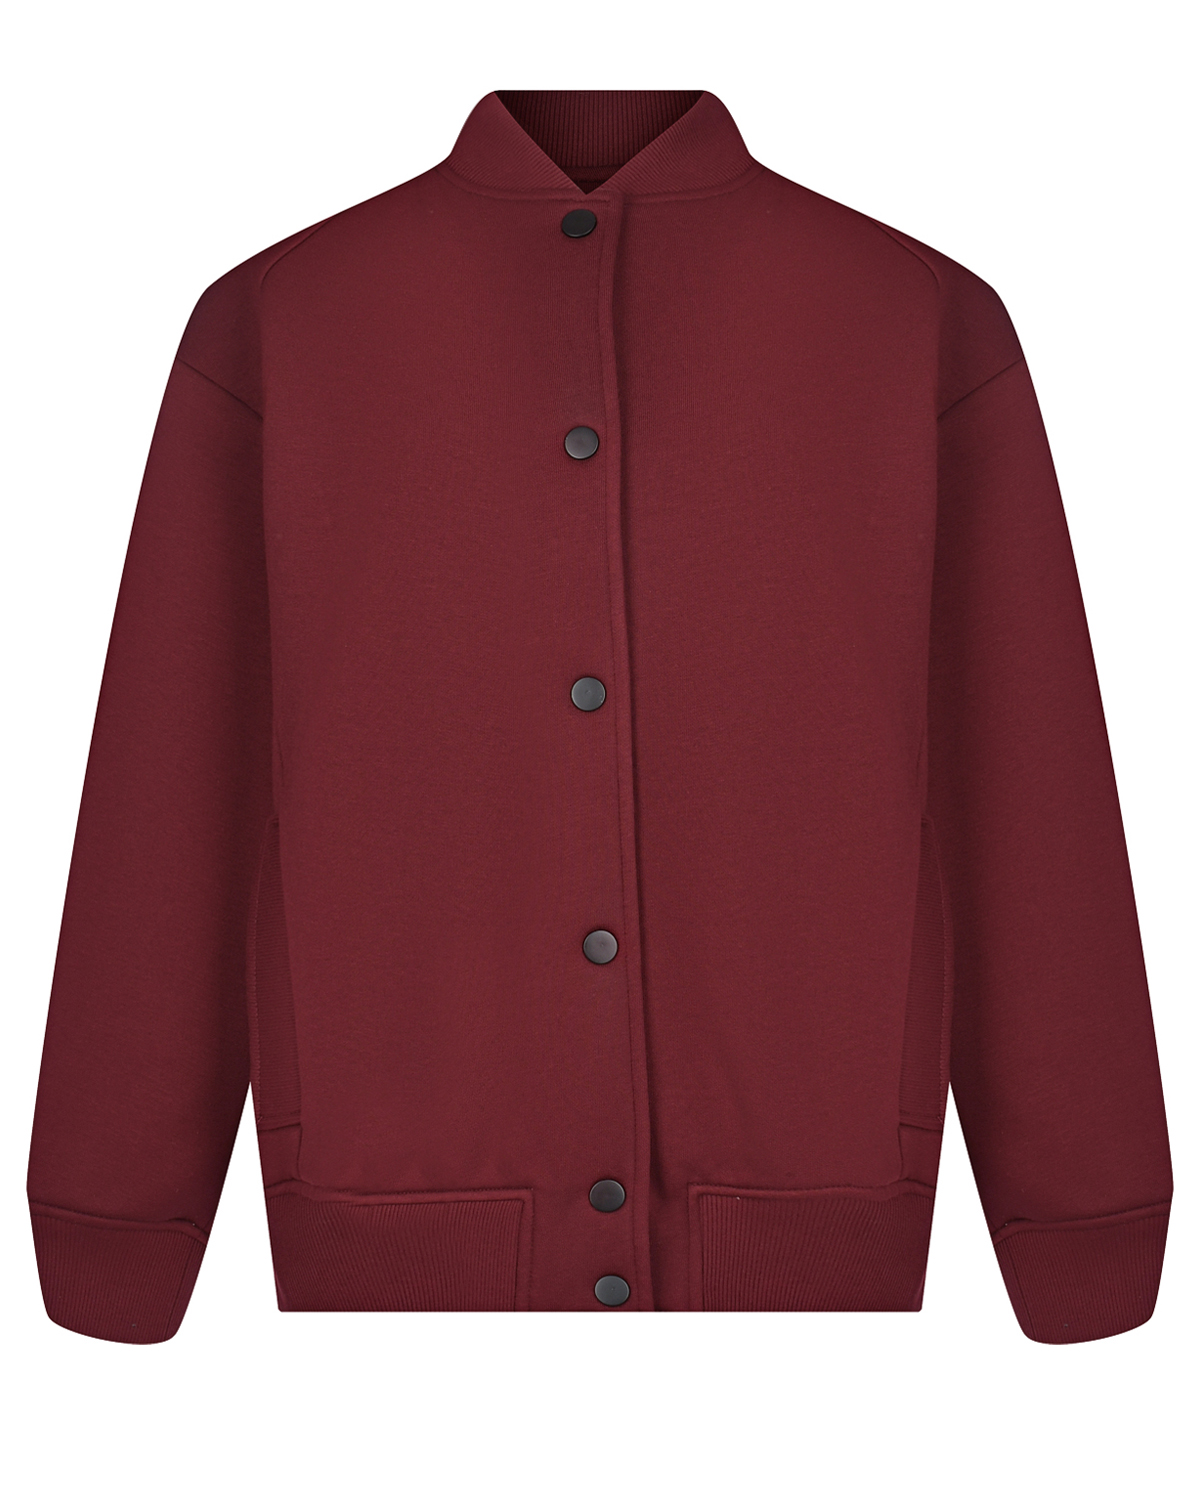 Укороченная бордовая куртка-бомбер Dan Maralex, размер 42, цвет бордовый